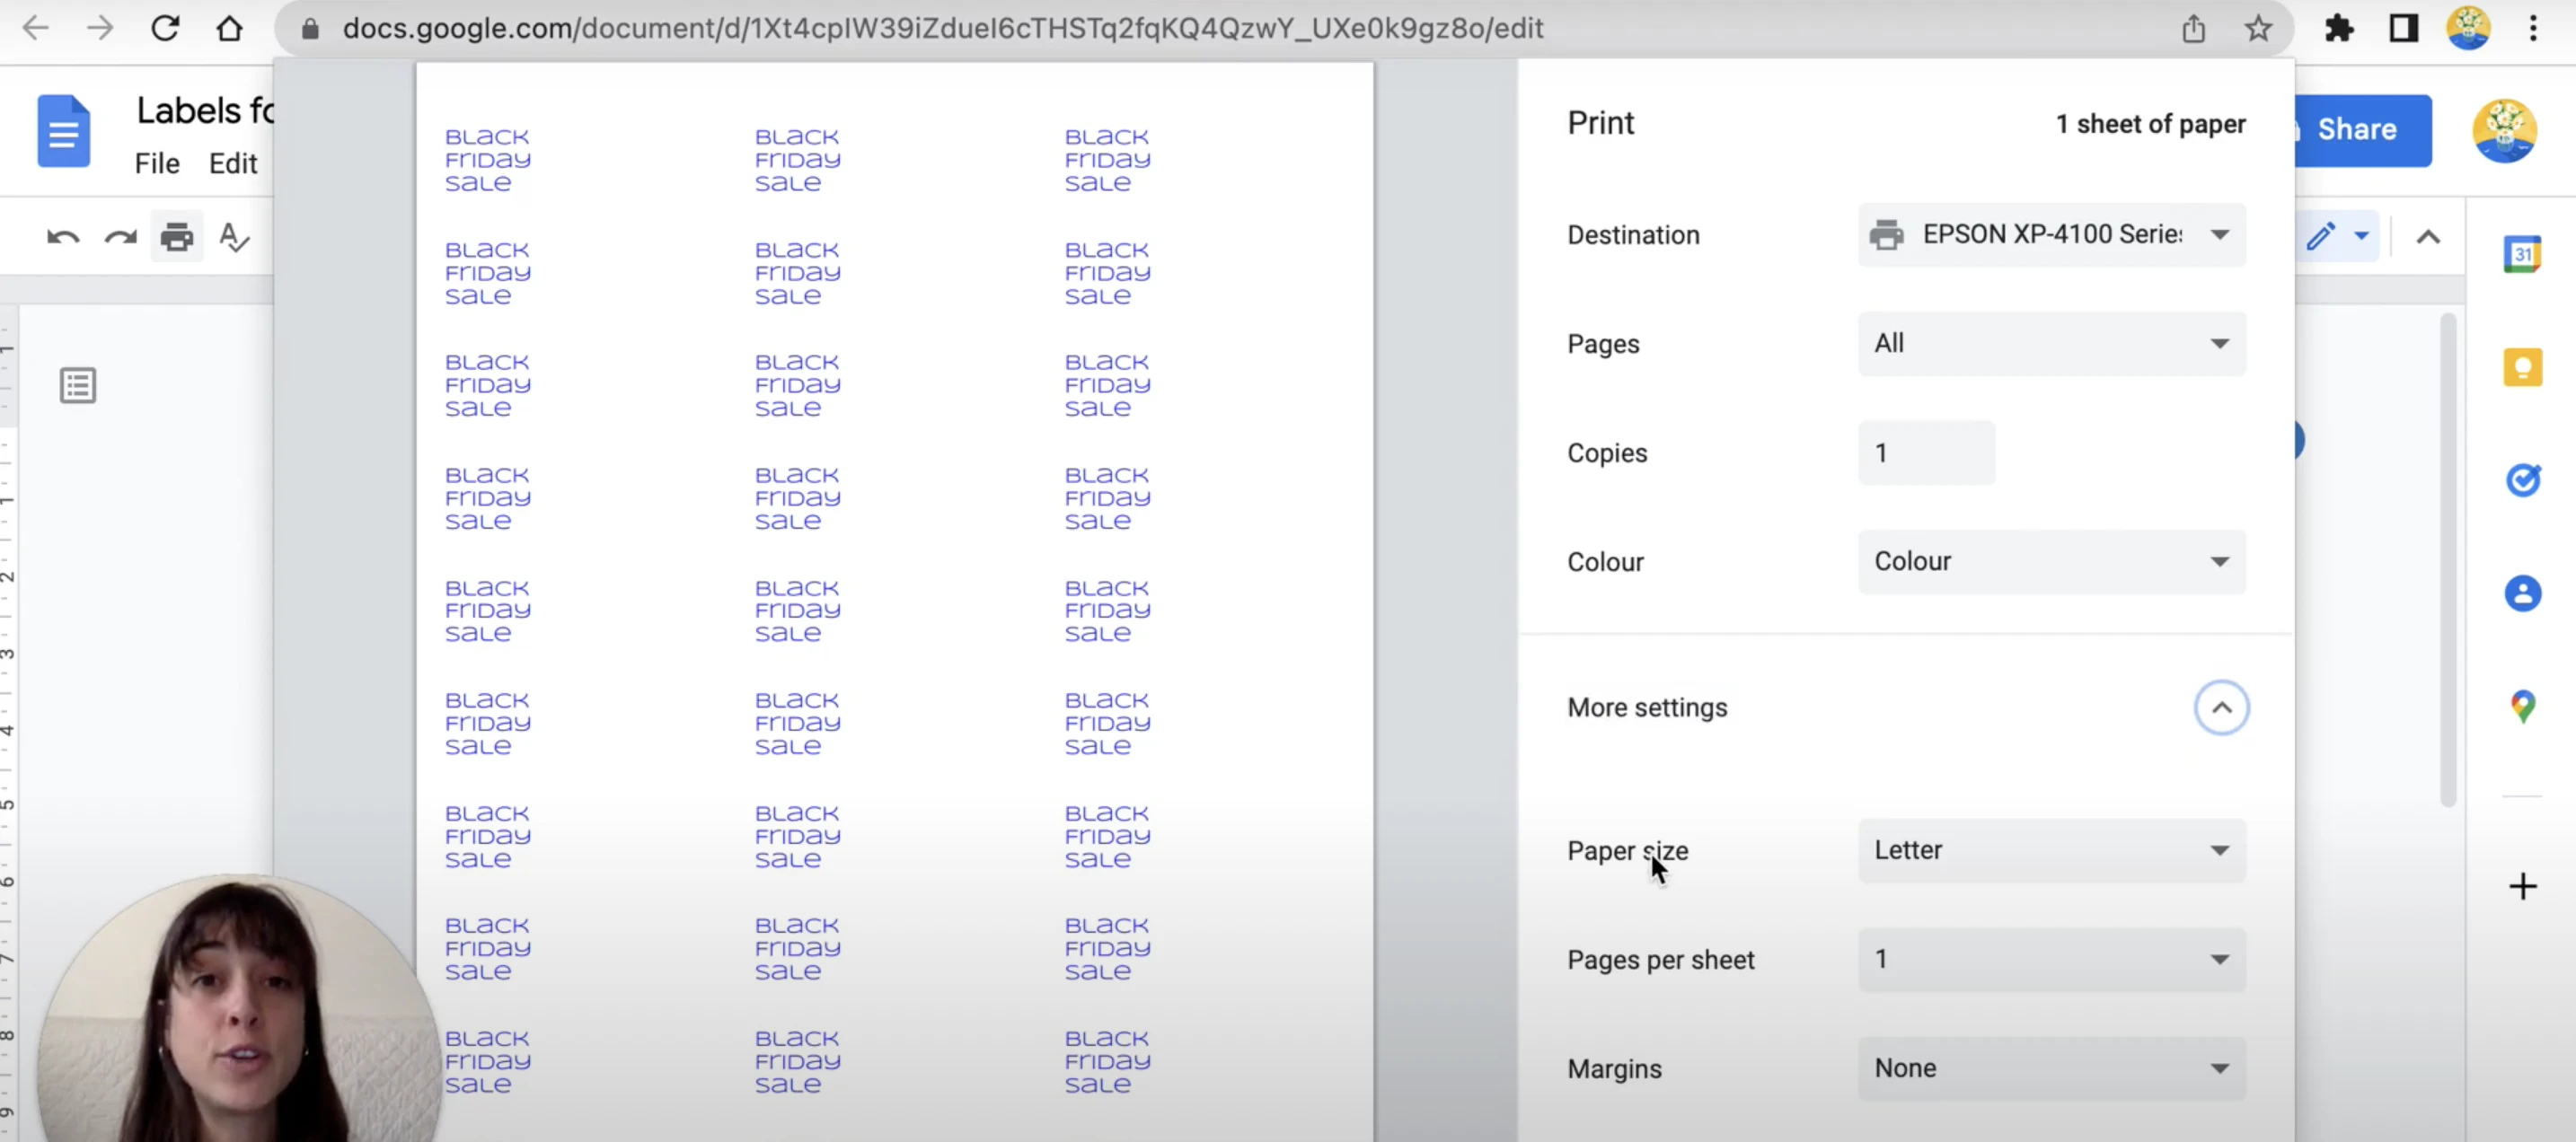 Print labels menu in Google Docs